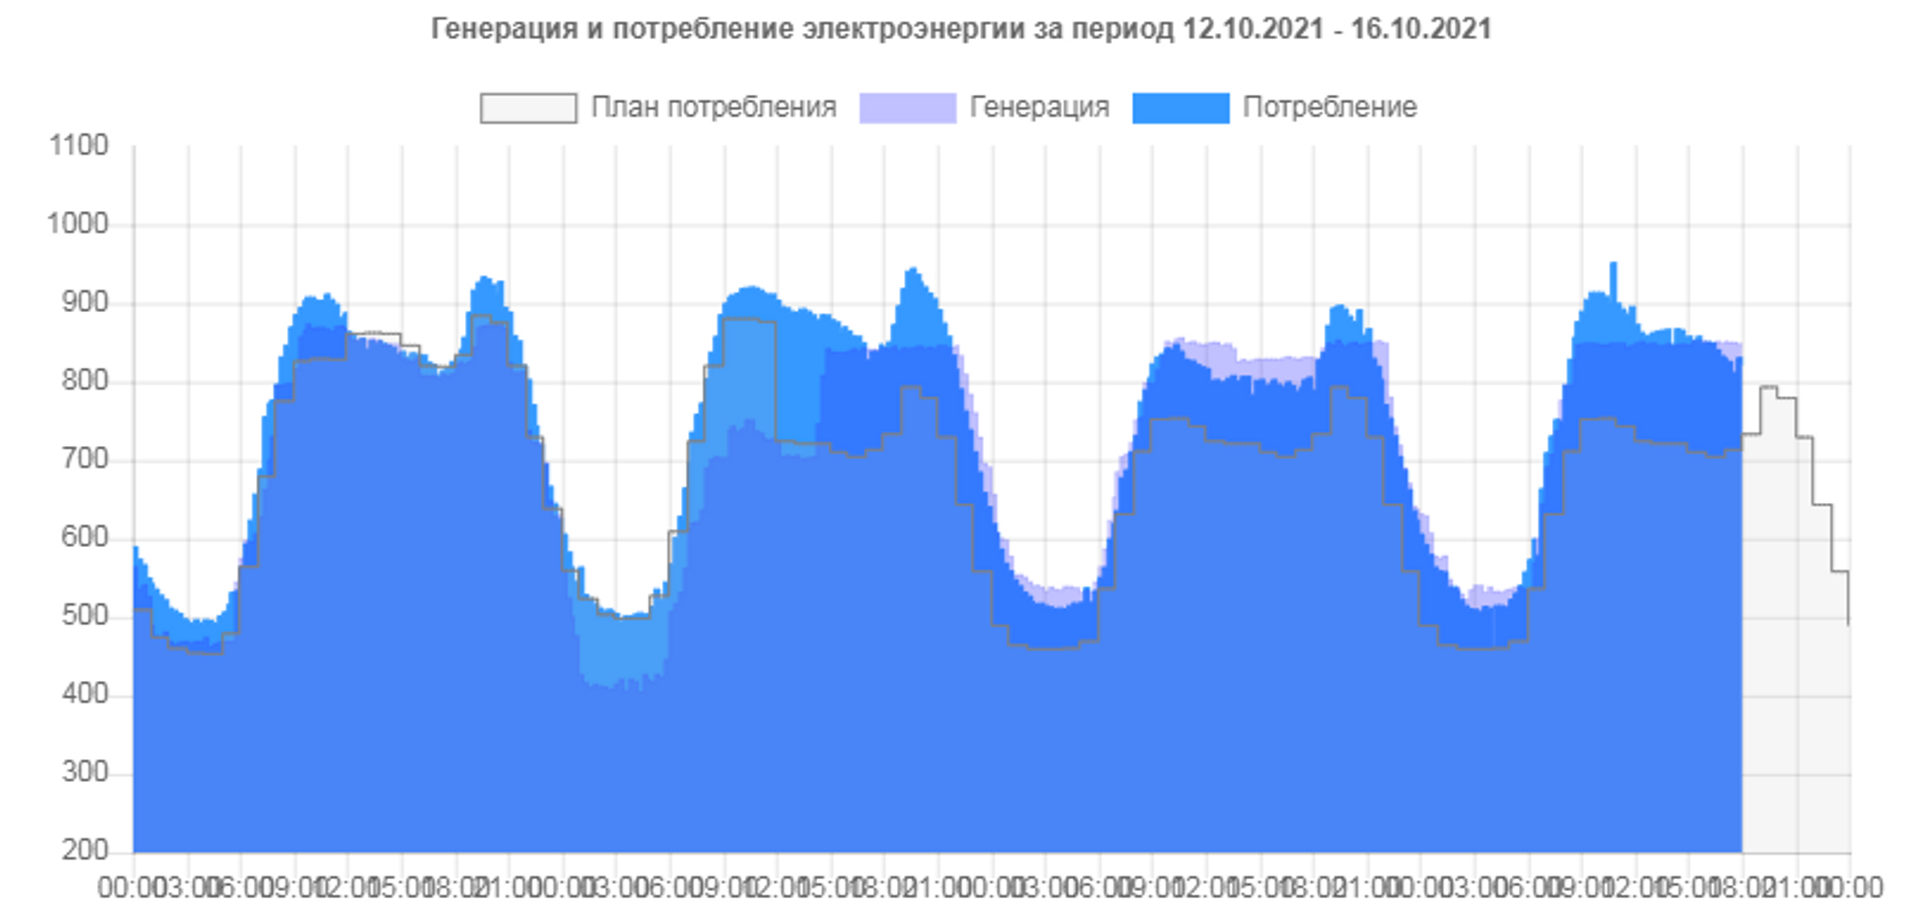 Производство и потребление электроэнергии в Молдове - Sputnik Молдова, 1920, 15.10.2021